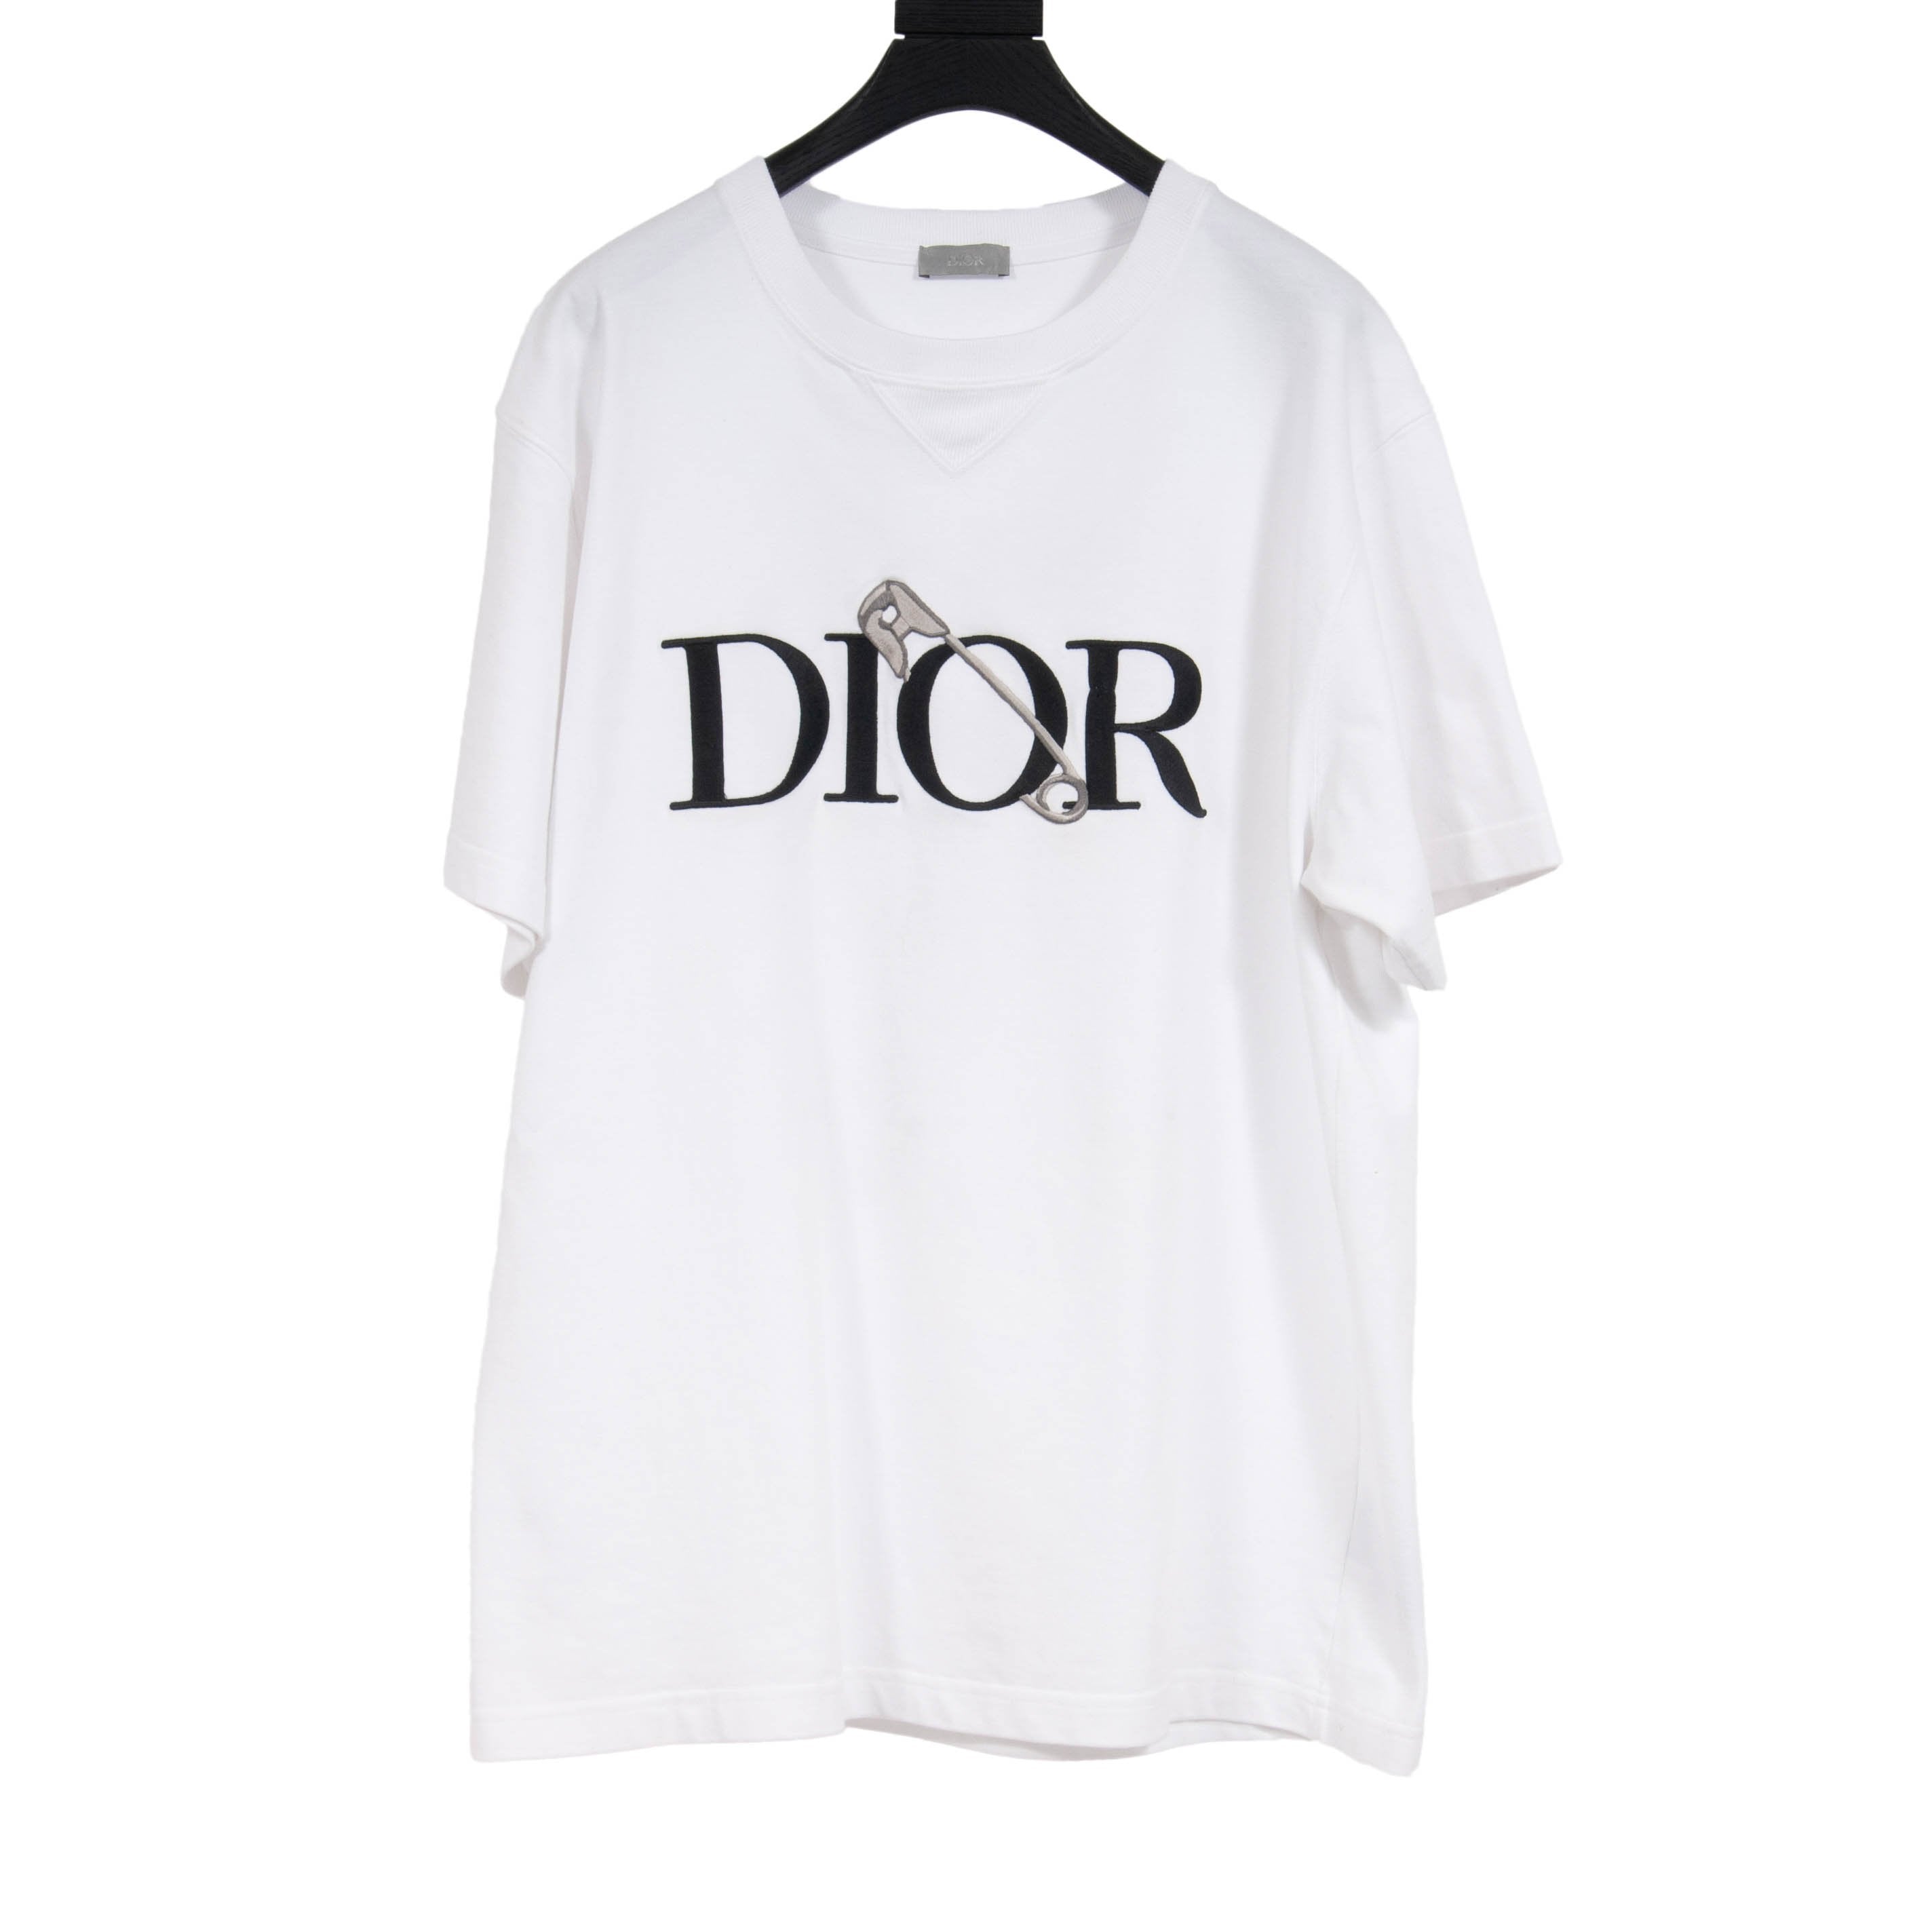 Dior judy blame t shirt white Mens Fashion Tops  Sets Tshirts  Polo  Shirts on Carousell